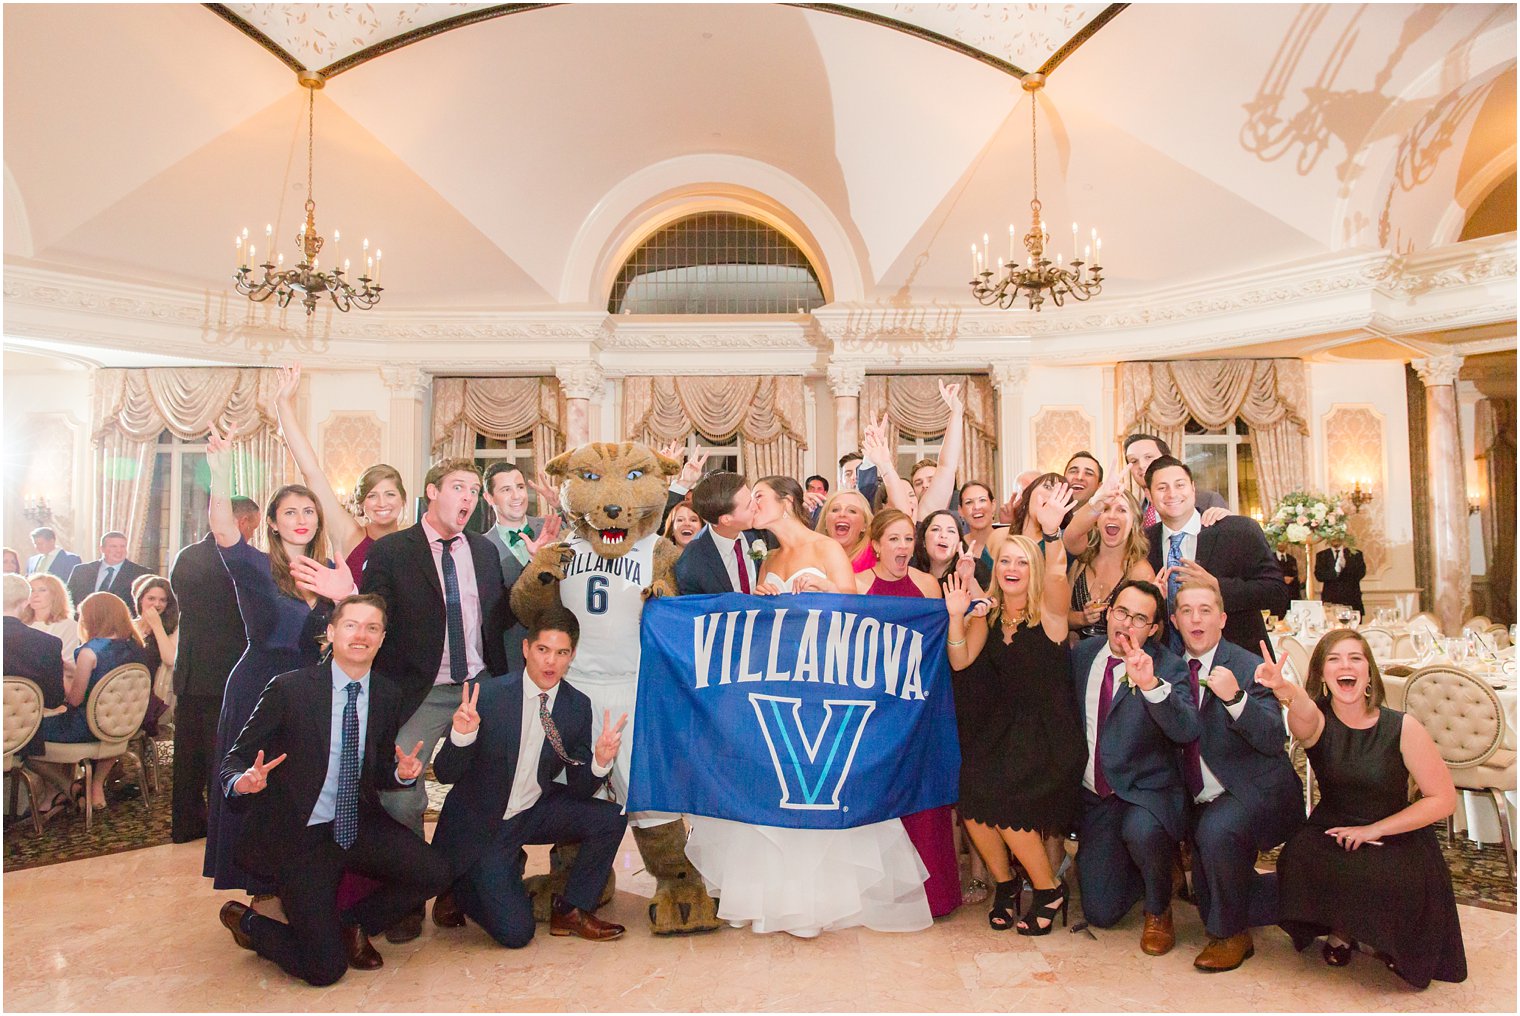 Villanova Wildcat at wedding reception | Villanova alumni